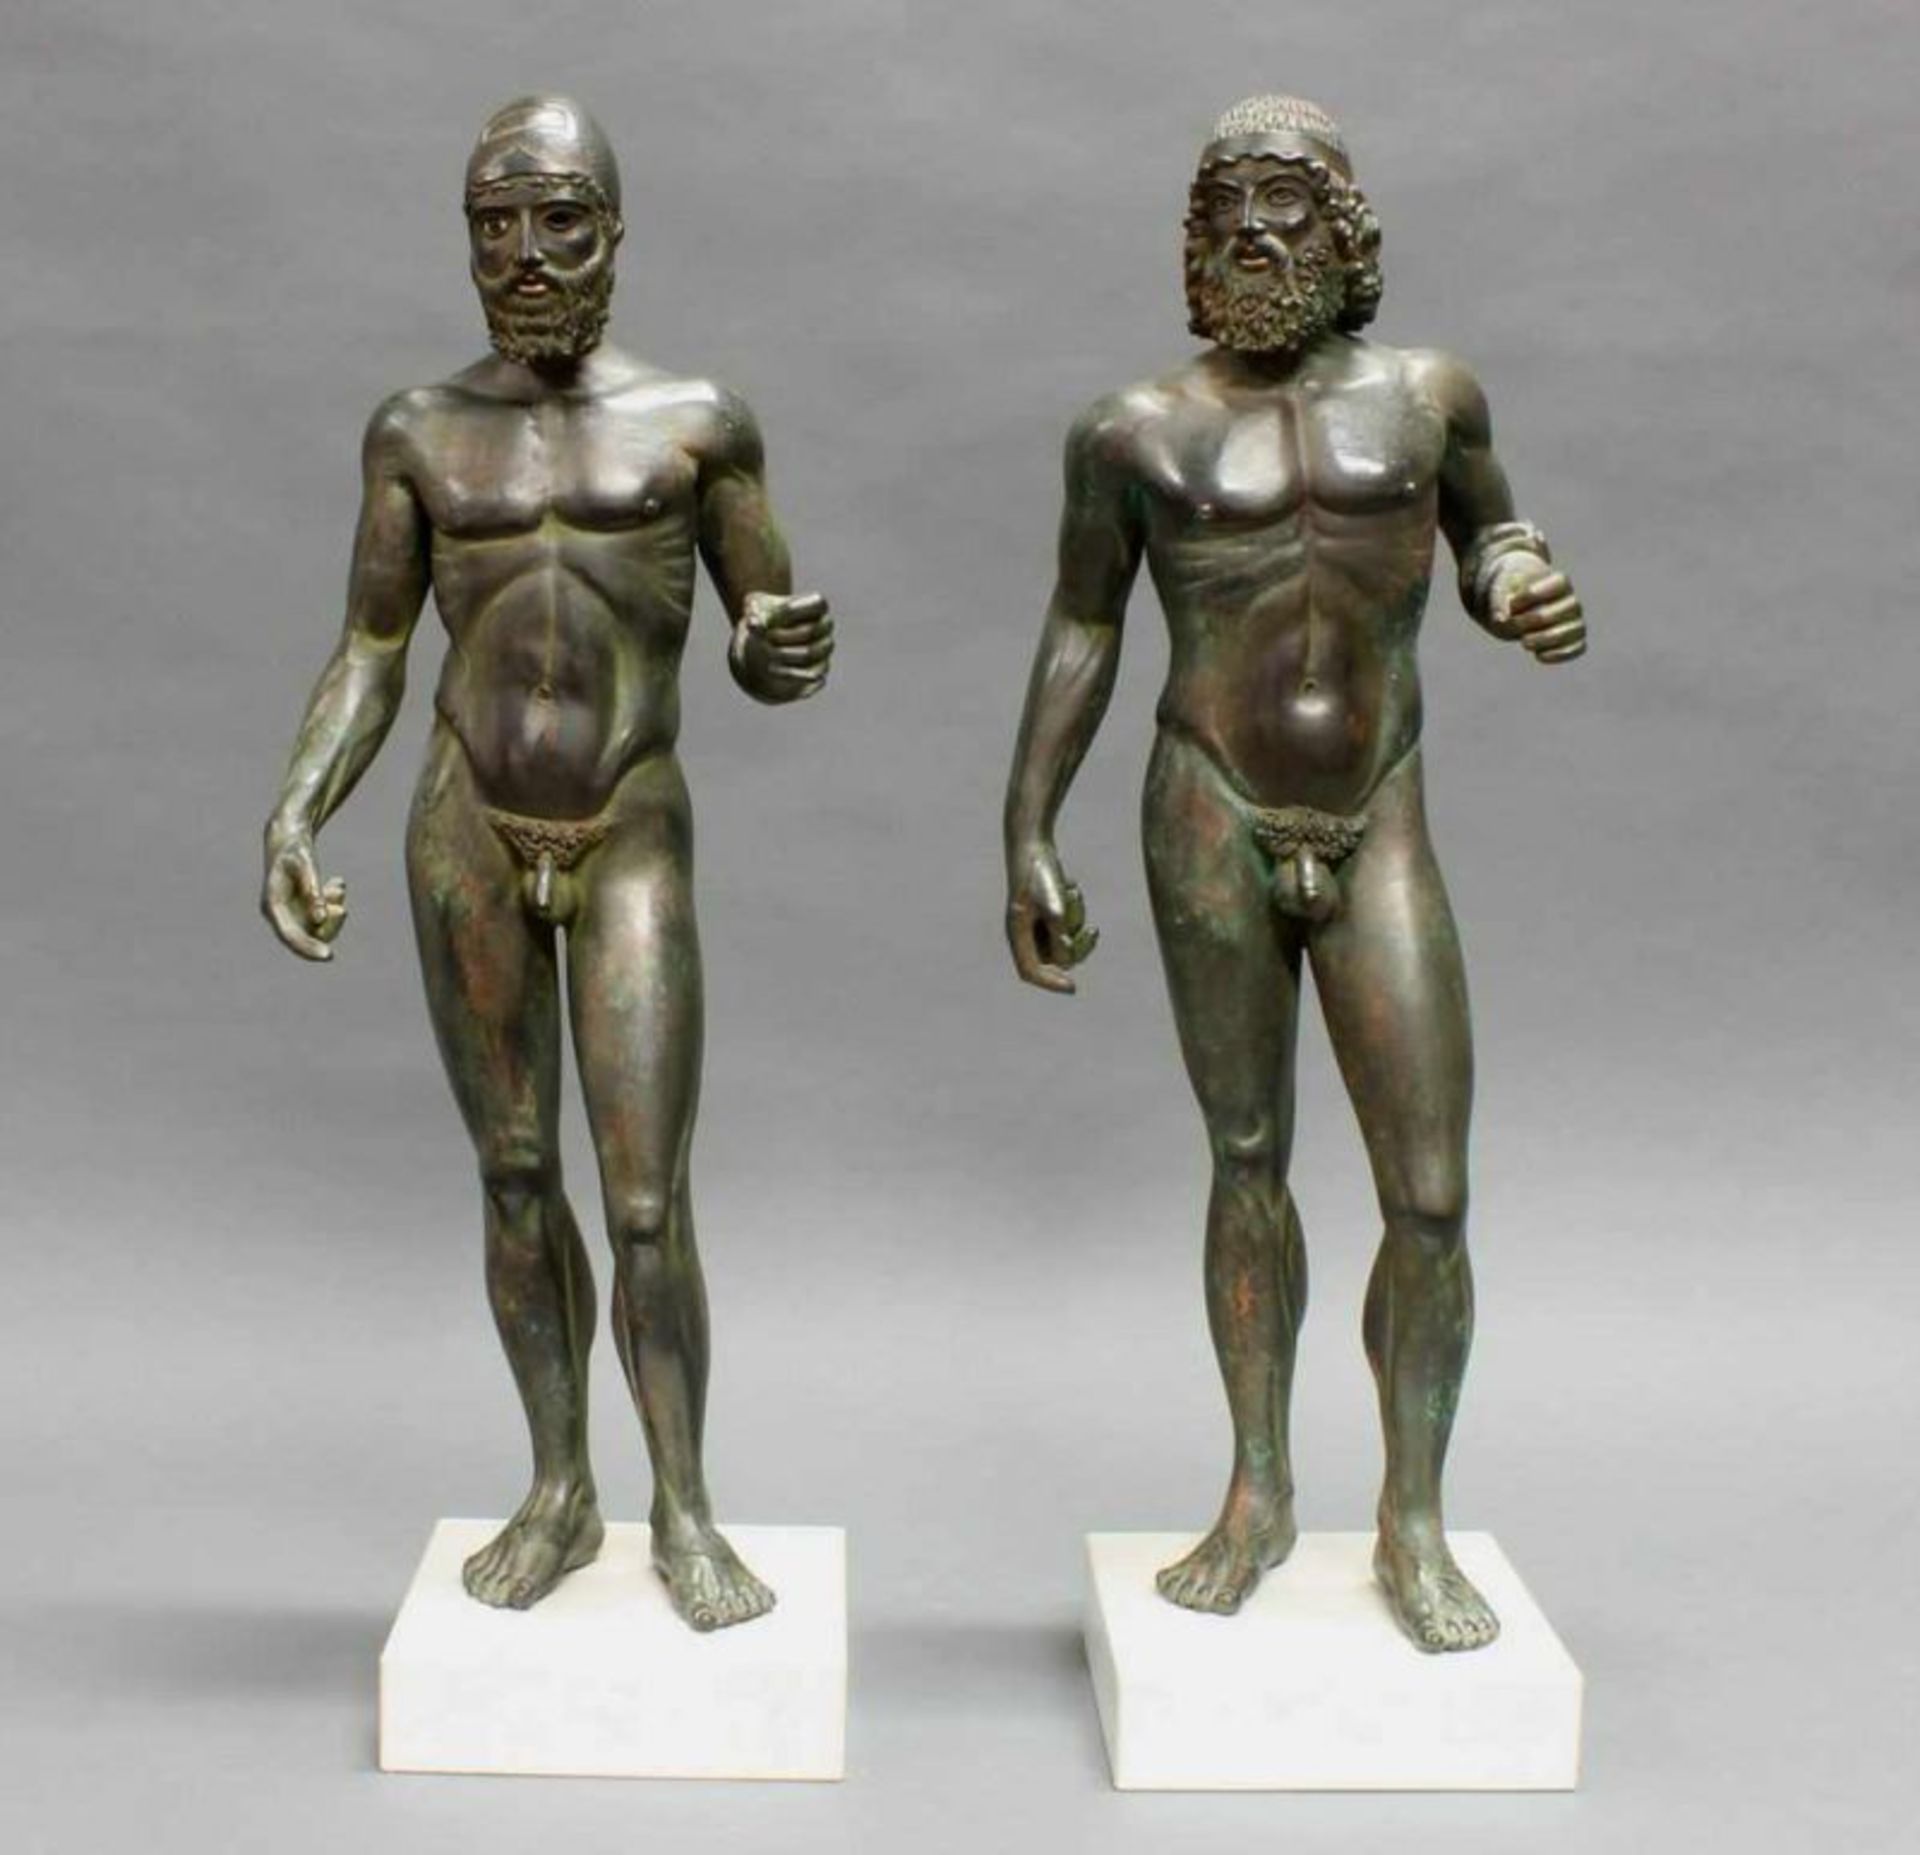 Paar Museumsrepliken, patiniert, nach den "Bronzestatuen von Riace", jeweils bezeichnet DMG, auf